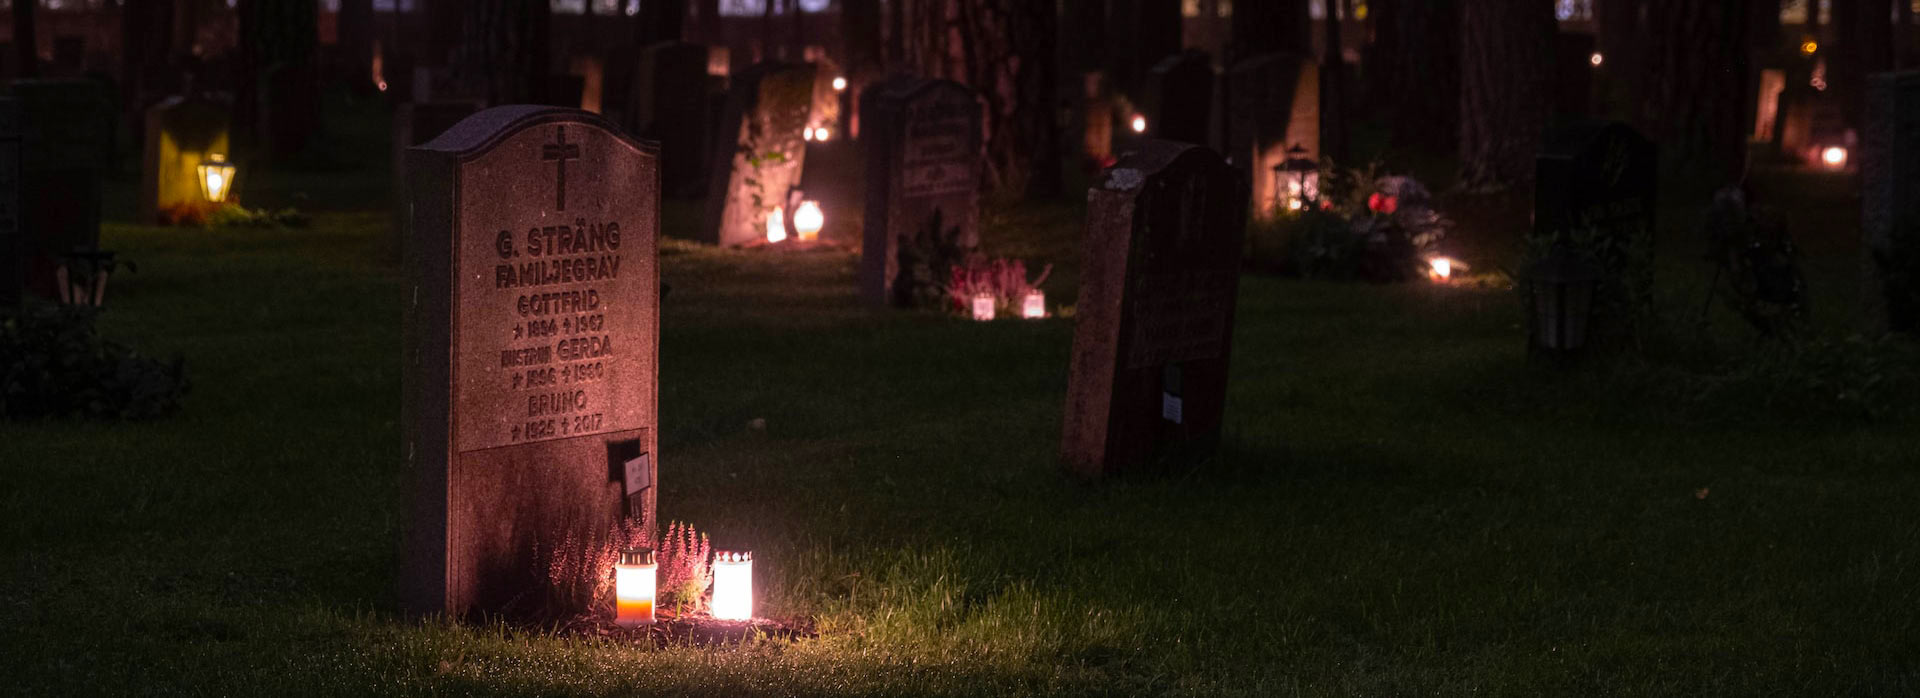 Một nghĩa địa vào ban đêm được thắp sáng bằng nến